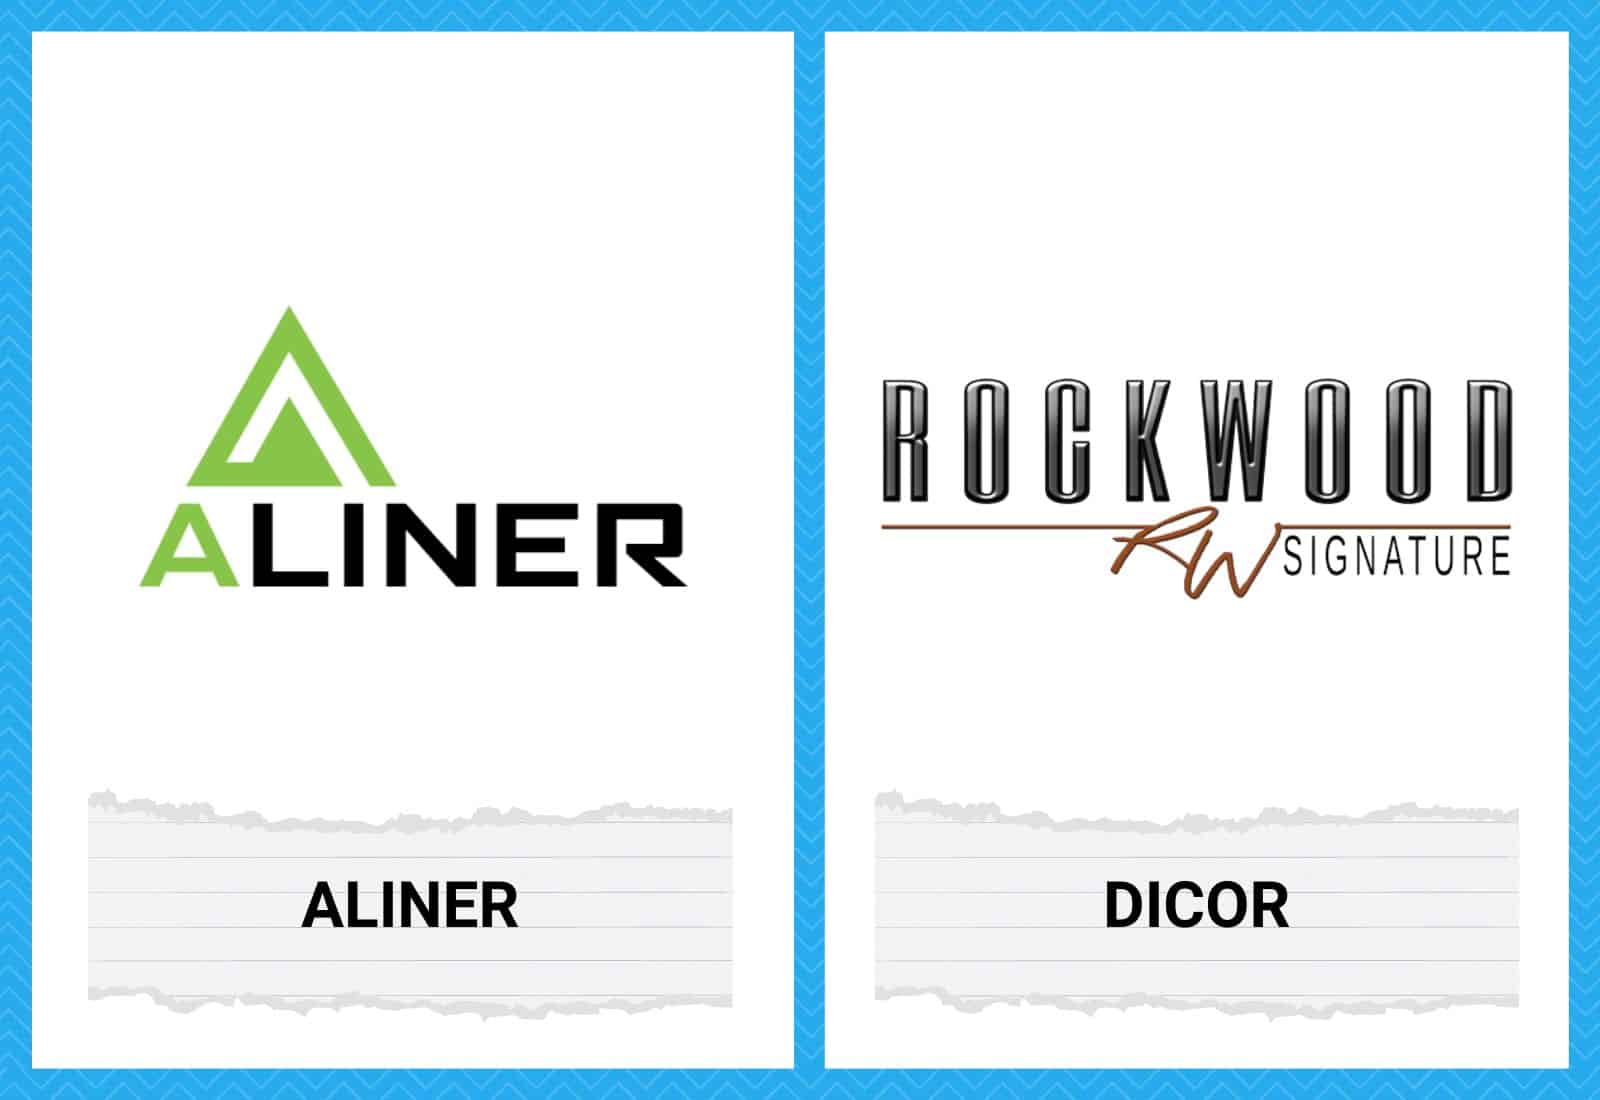 Aliner vs Rockwood